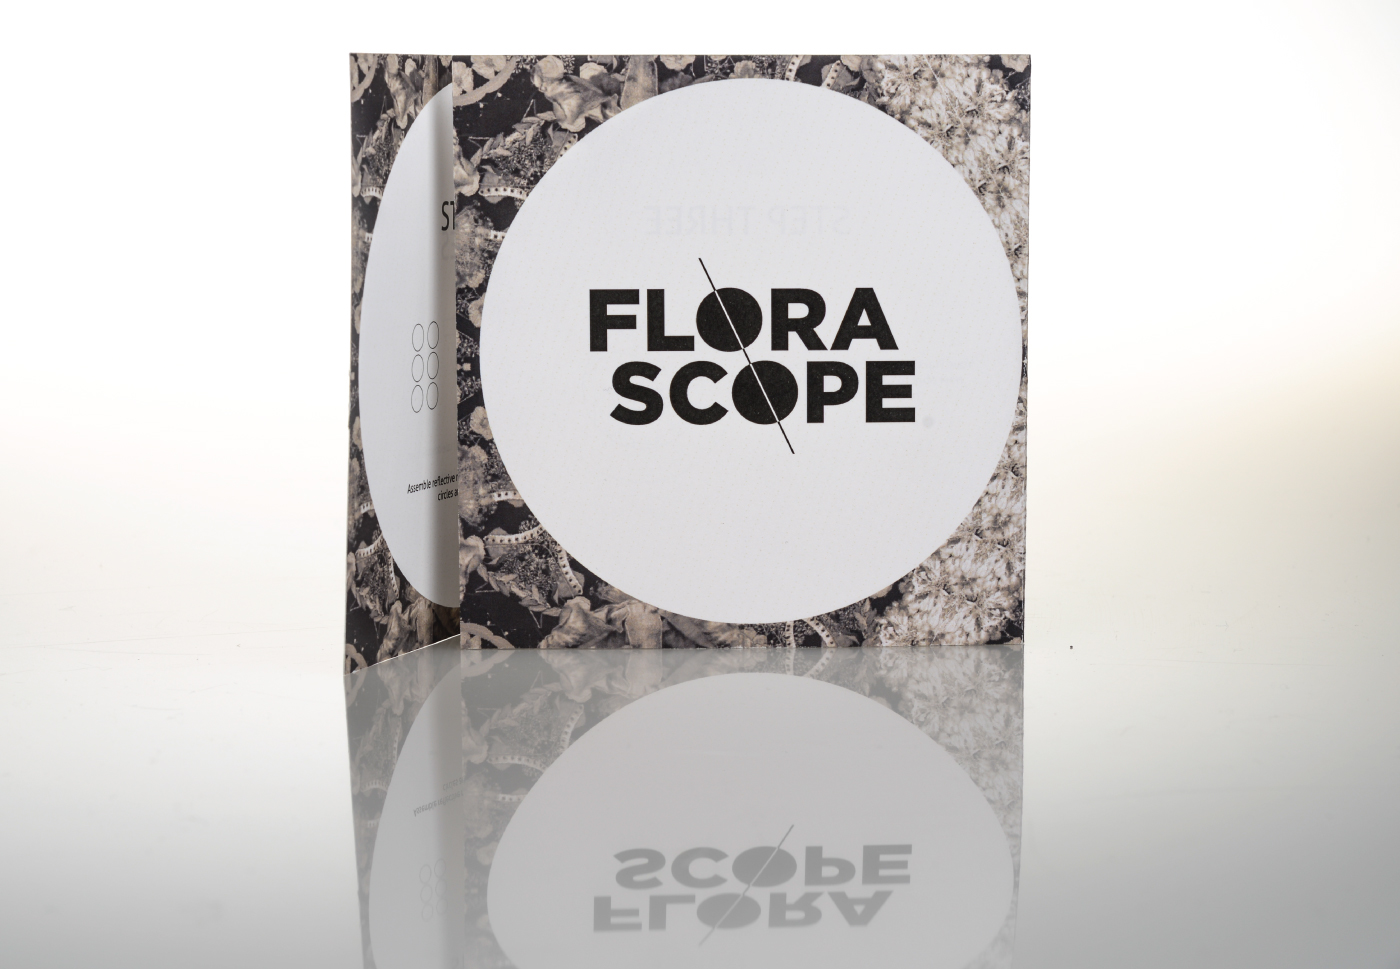 florascope chalsey chalseyfalk uwstout stout Wisconsin student design kaleidoscope flower Nature brand modern